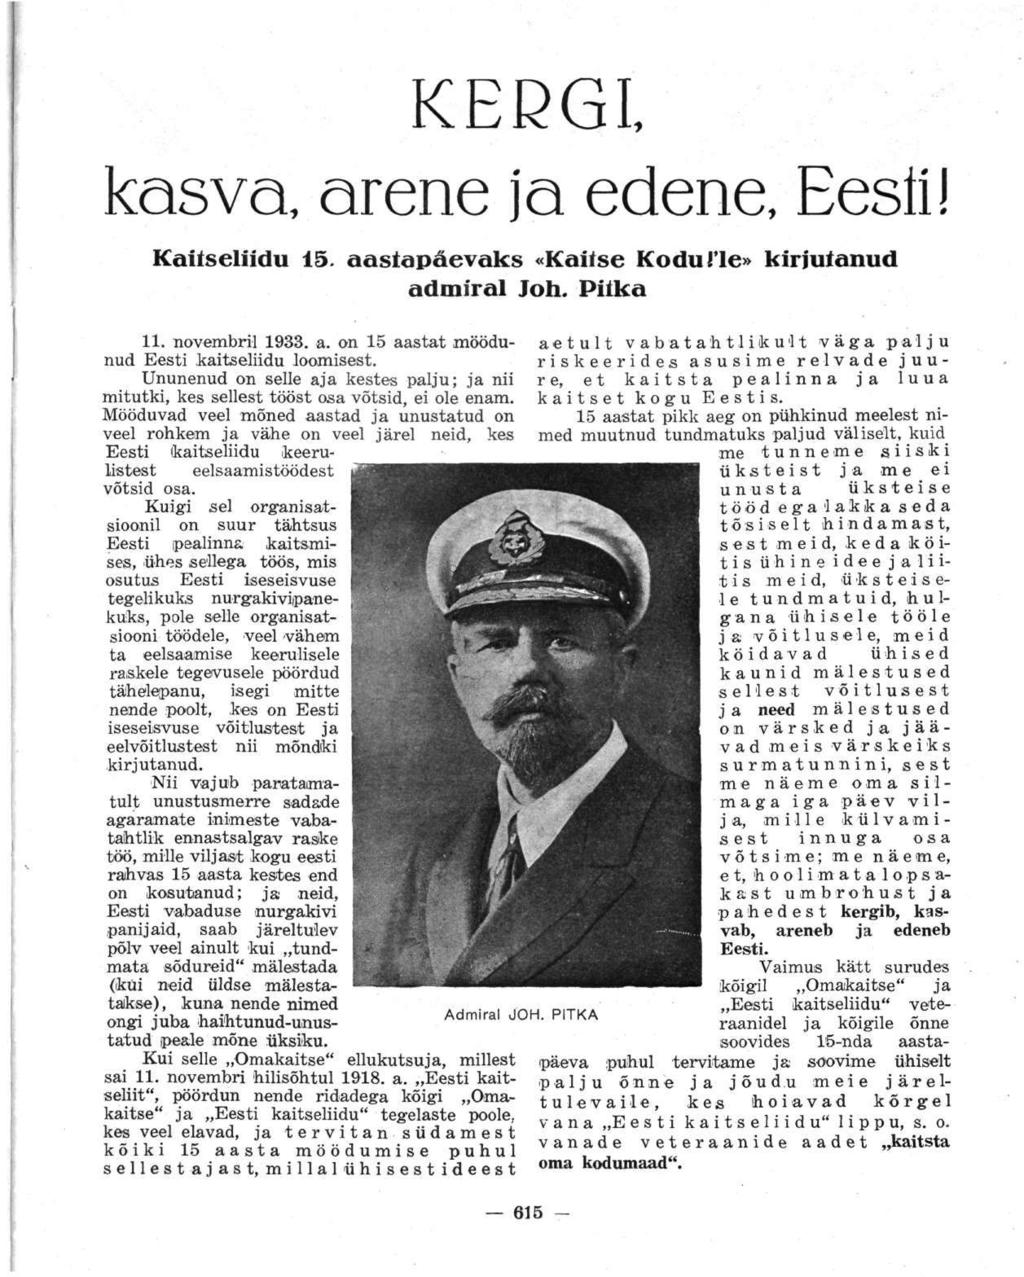 KERGI, kasva arene ja edene, Eesti! Kaitseliidu 15. aastapäevaks «Kaitse Kodu!le» kirjutanud admiral Joh. Pilka 11. novembril 1933. a. on 15 aastat möödunud Eesti kaitseliidu loomisest.